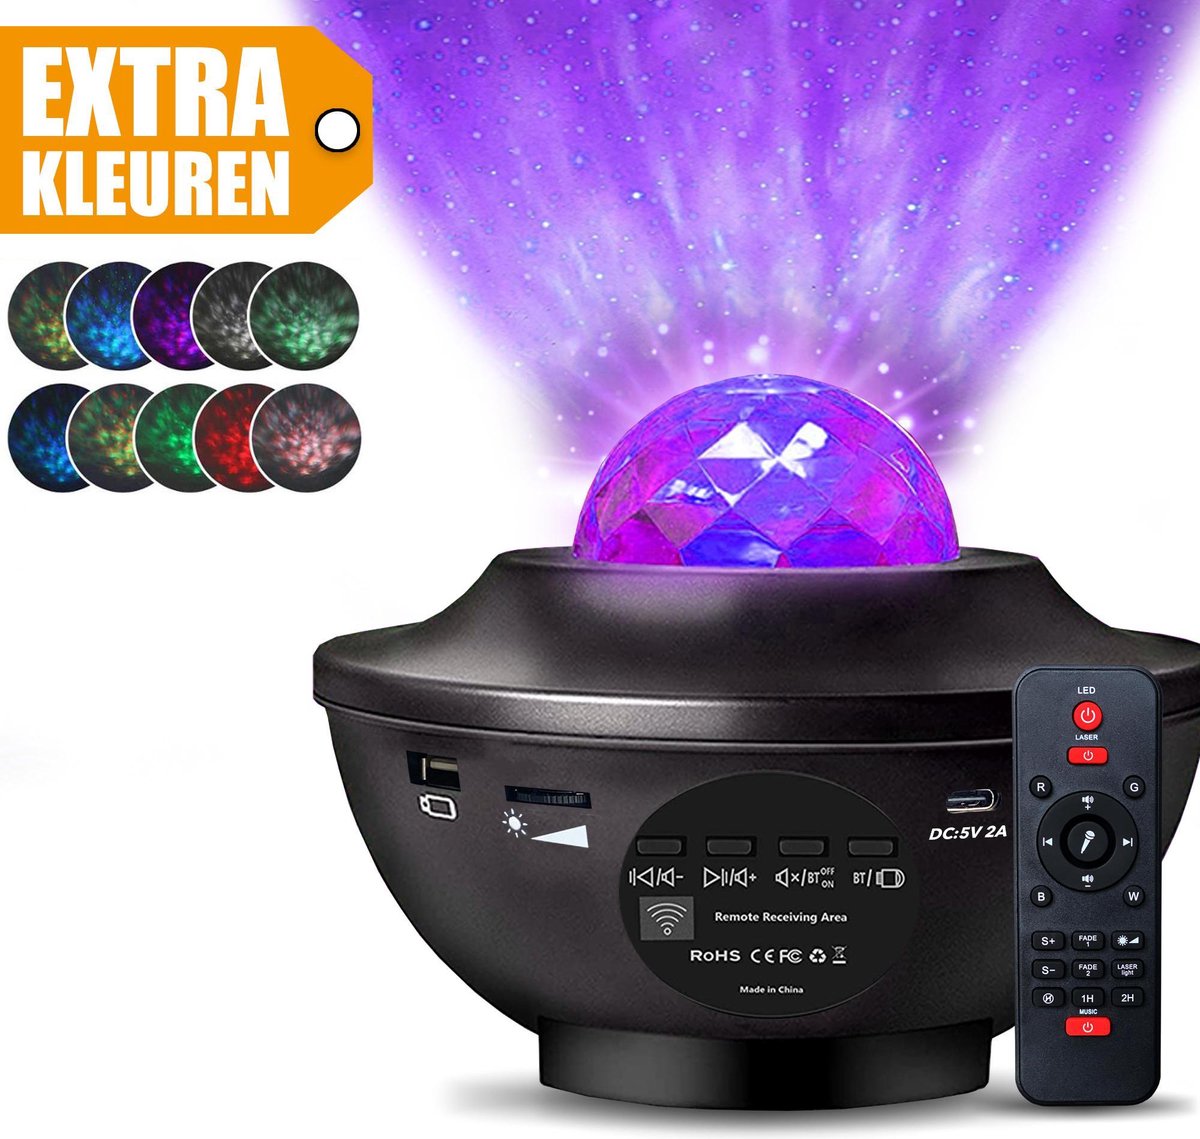 Sterren projector - Met bluetooth - Galaxy projector -  Nachtlampje kinderen en volwassenen - Happyment